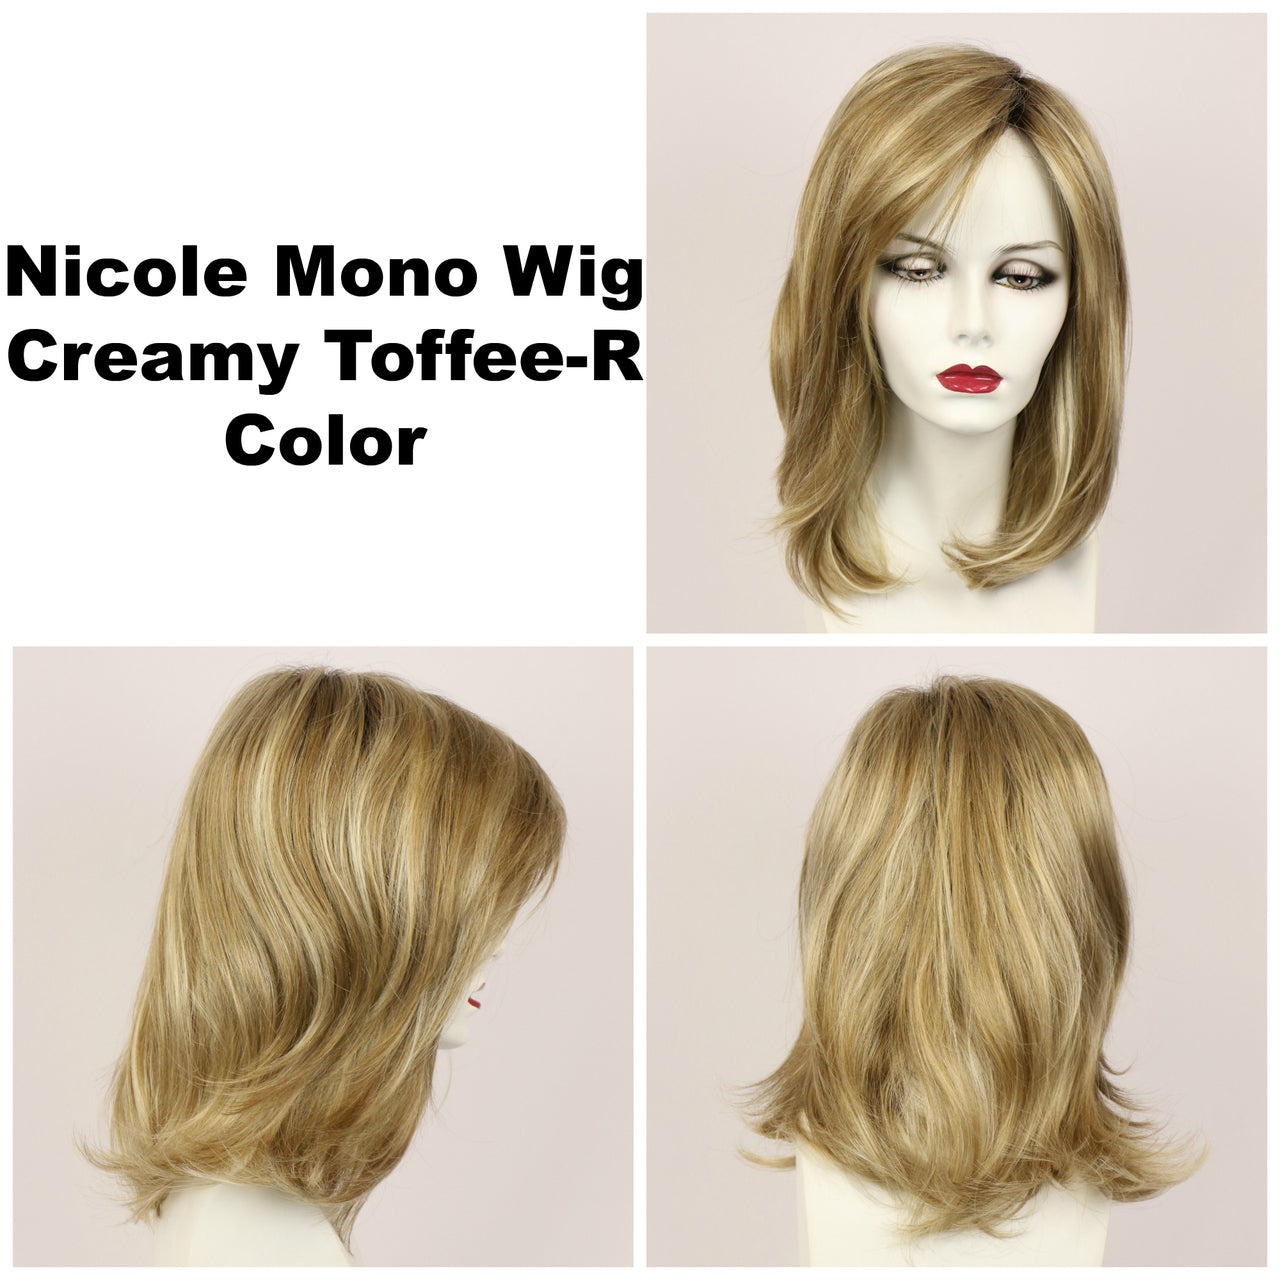 Creamy Toffee-R / Nicole Monofilament w/ Roots / Medium Wig